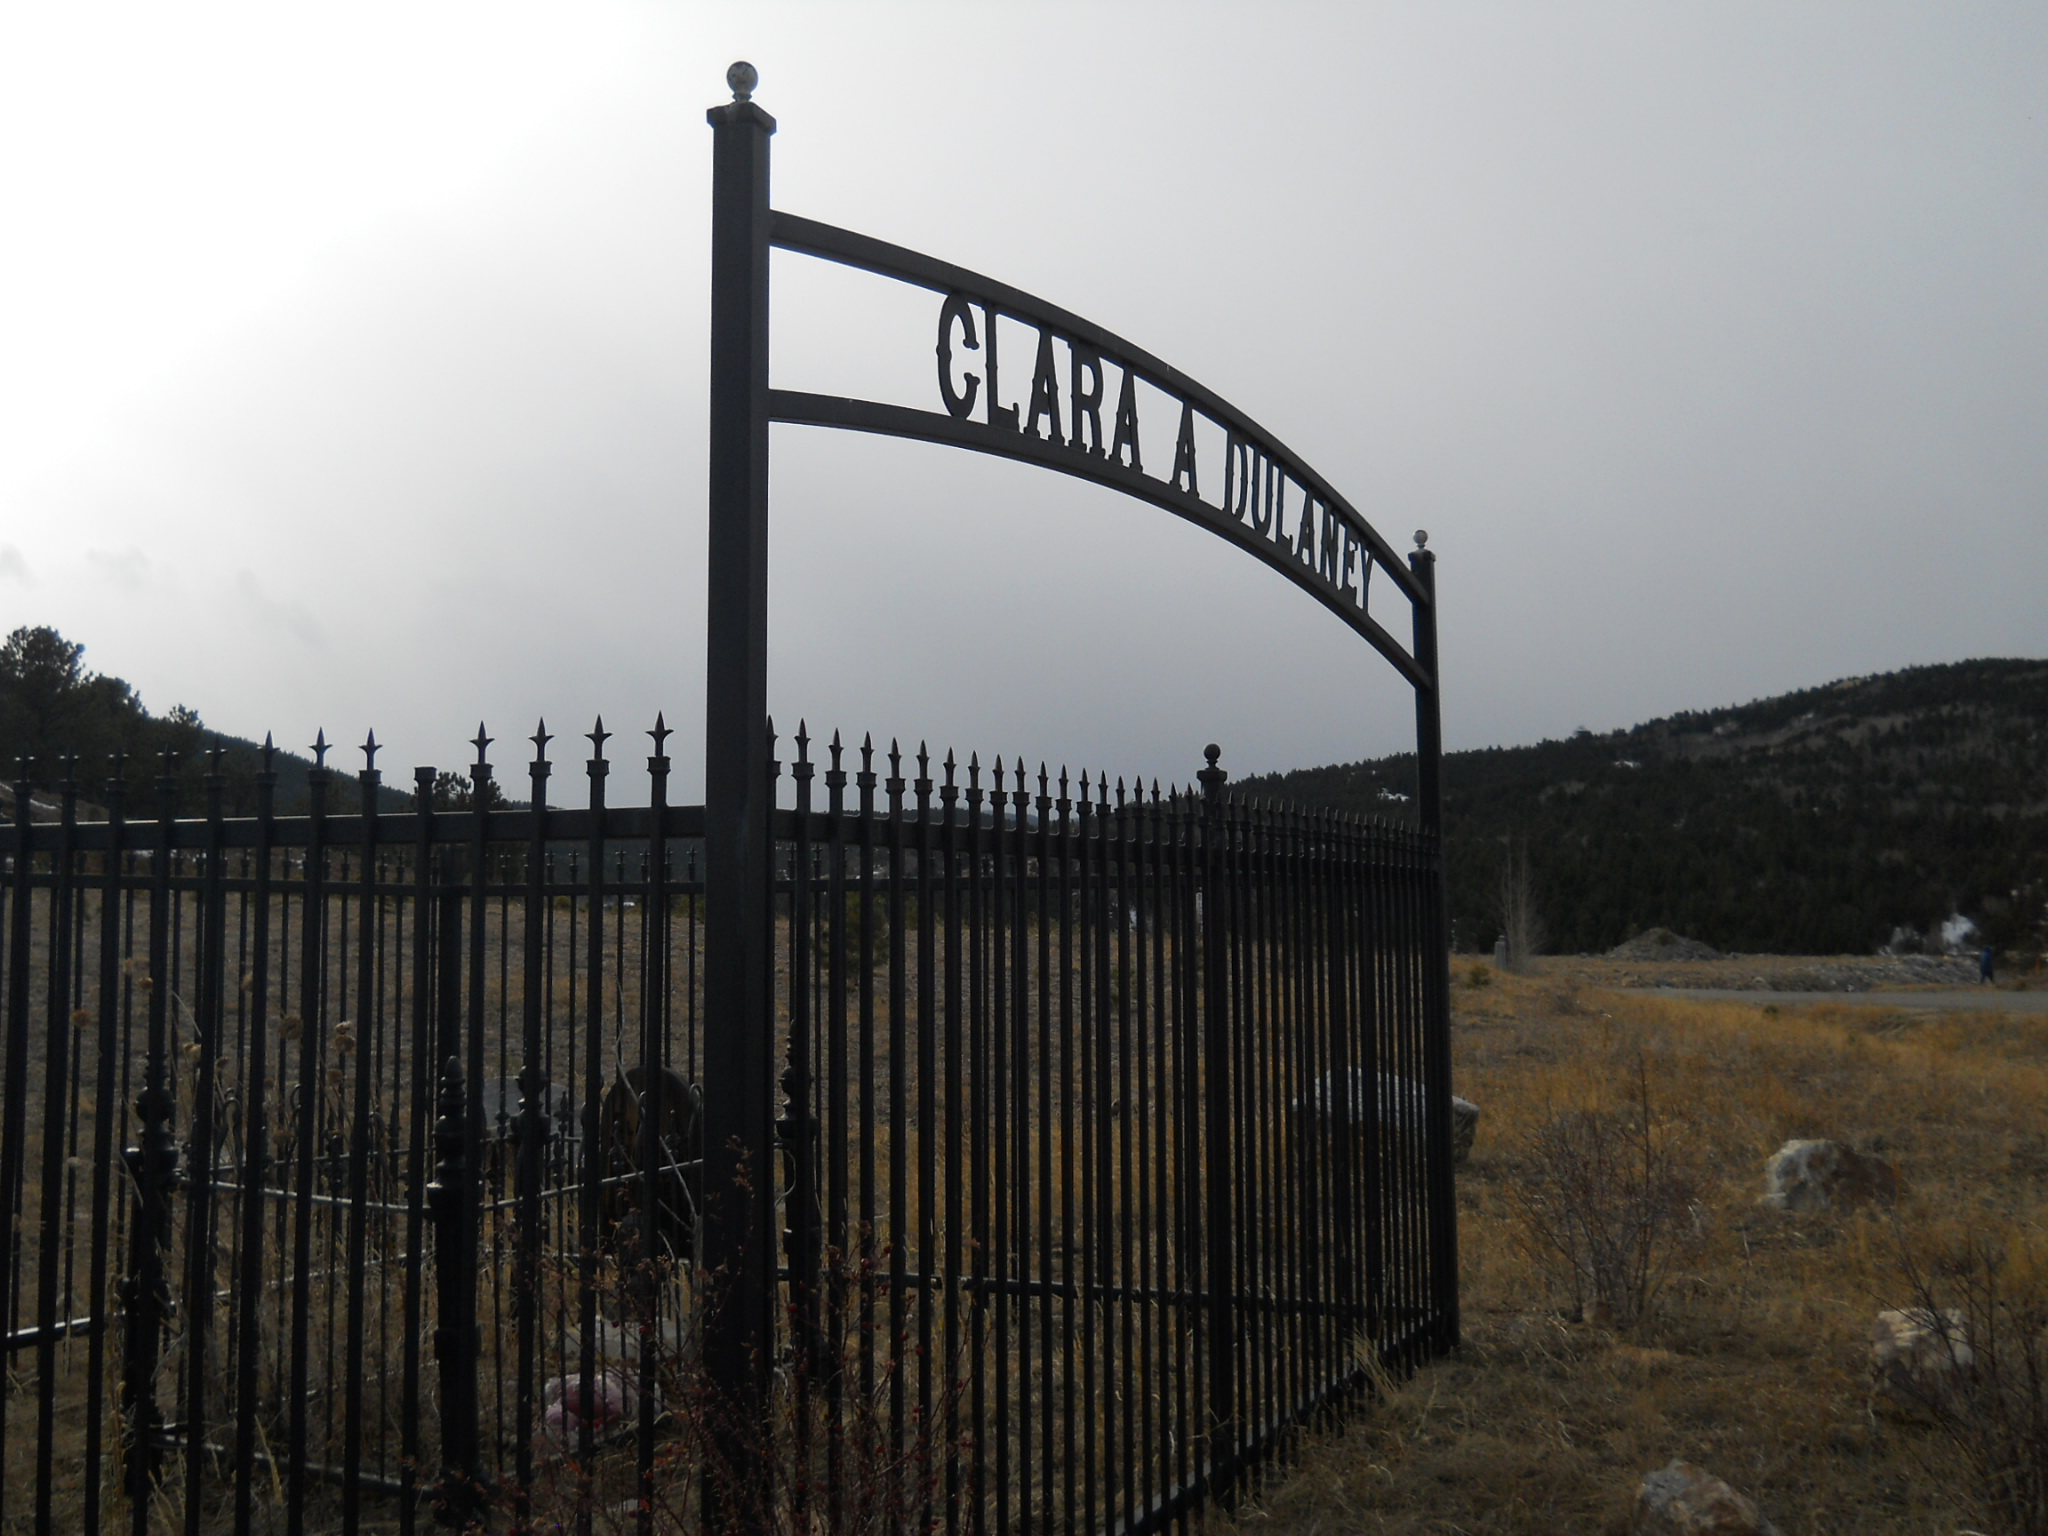 Iron fenced gravesite